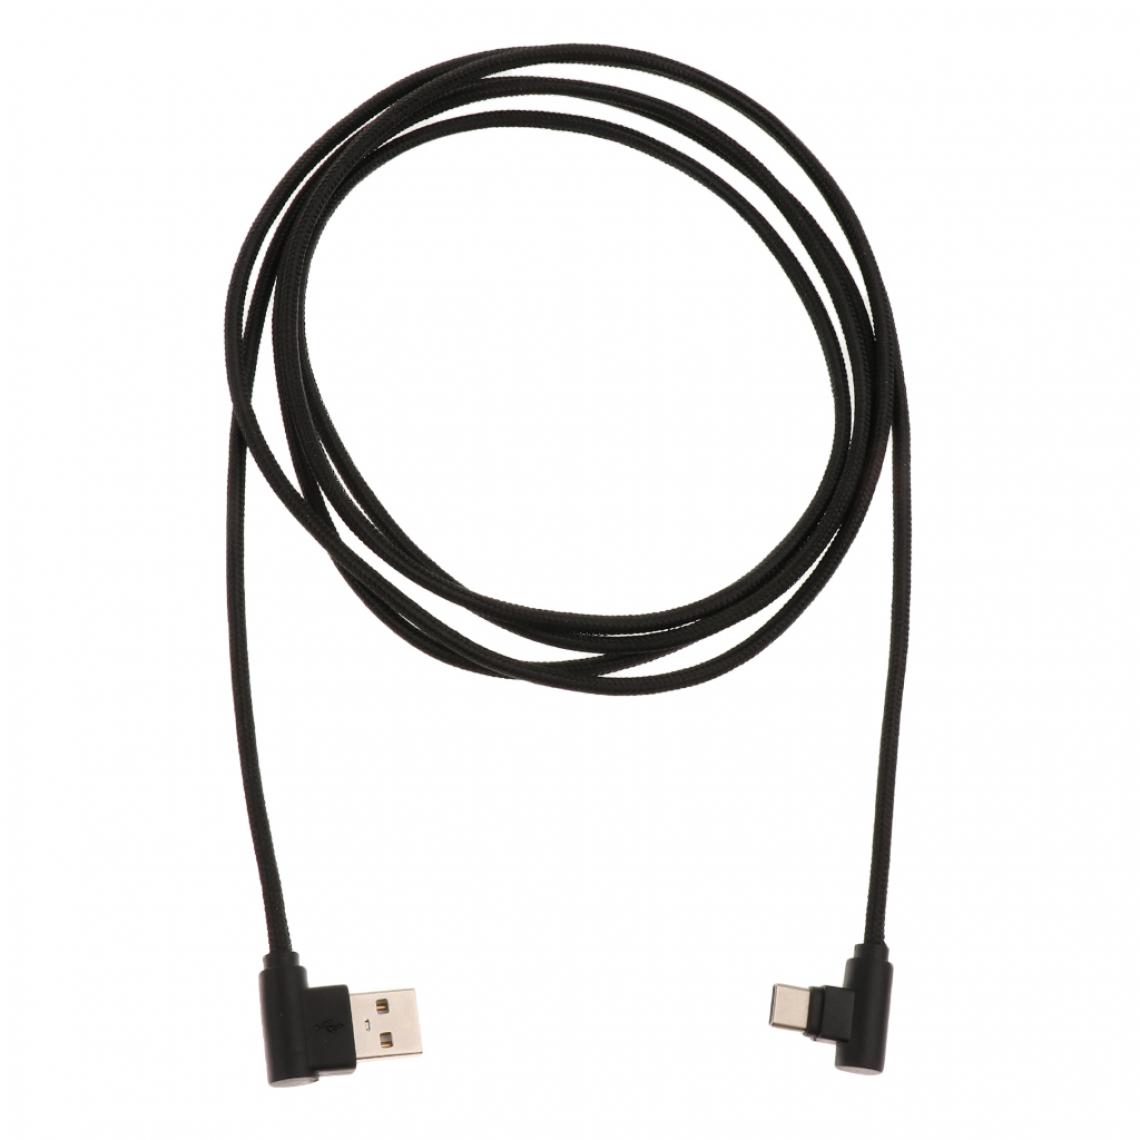 marque generique - 2meter 6.5ft usb vers usb type c sync chargeur coudé câble adaptateur cordon noir - Hub